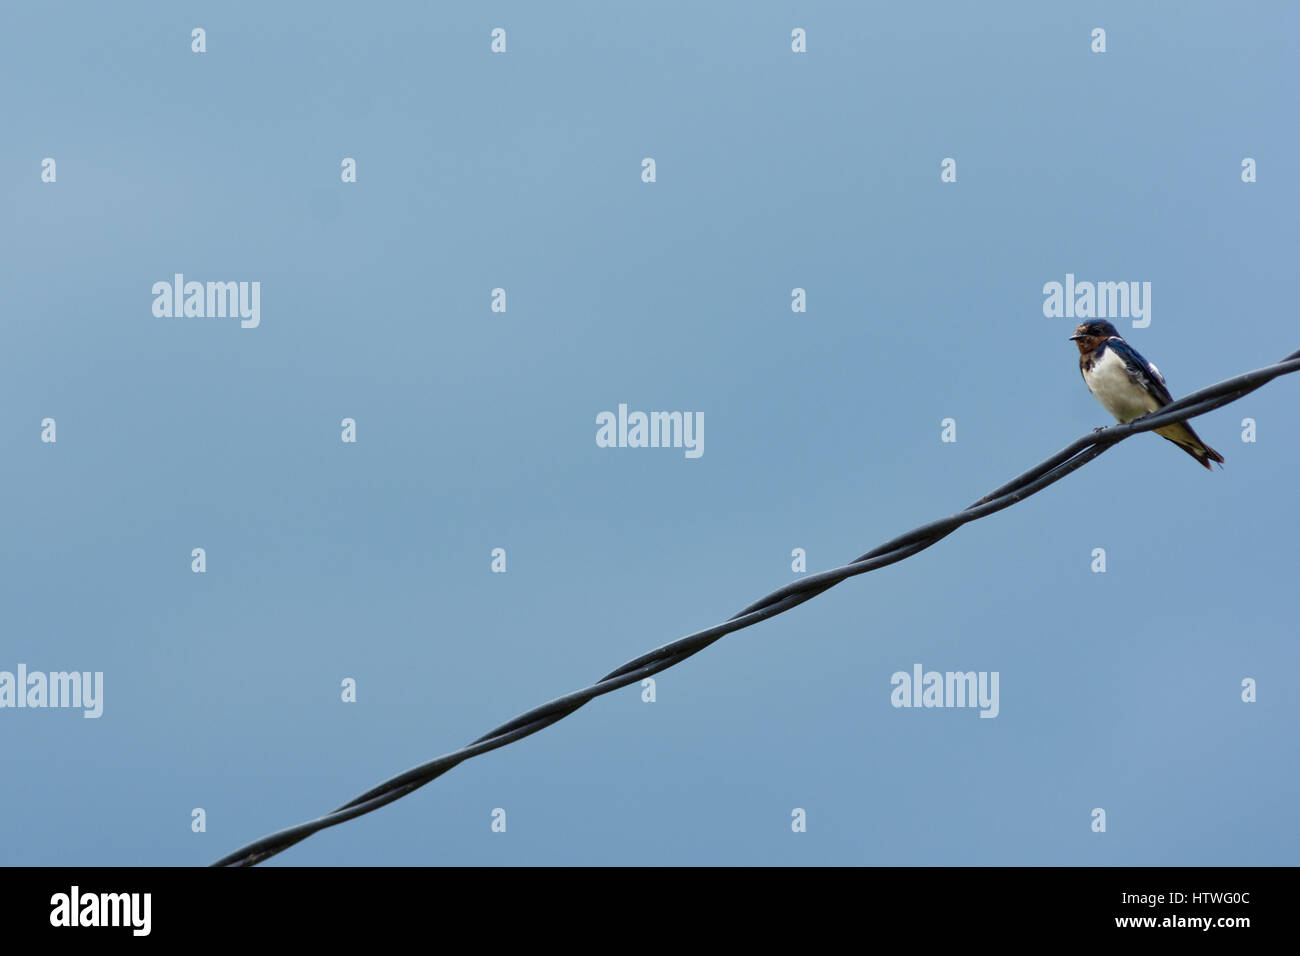 Oiseau perché Swift asiatique seule sur un fil téléphonique contre ciel blouse avec copie espace. Banque D'Images